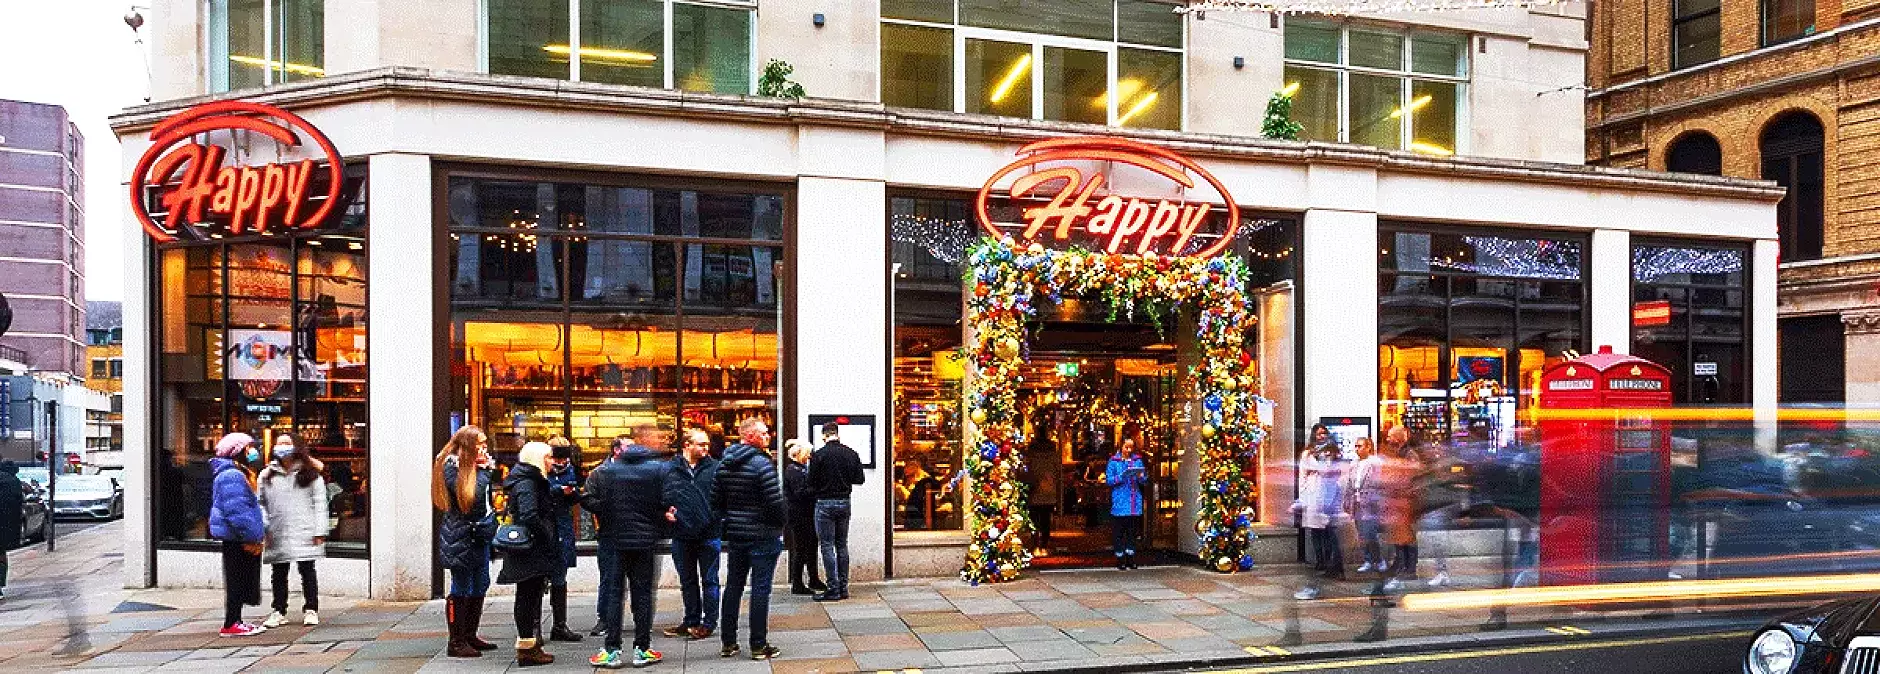 Българският ресторант Happy е обявен за най-добър в Лондон